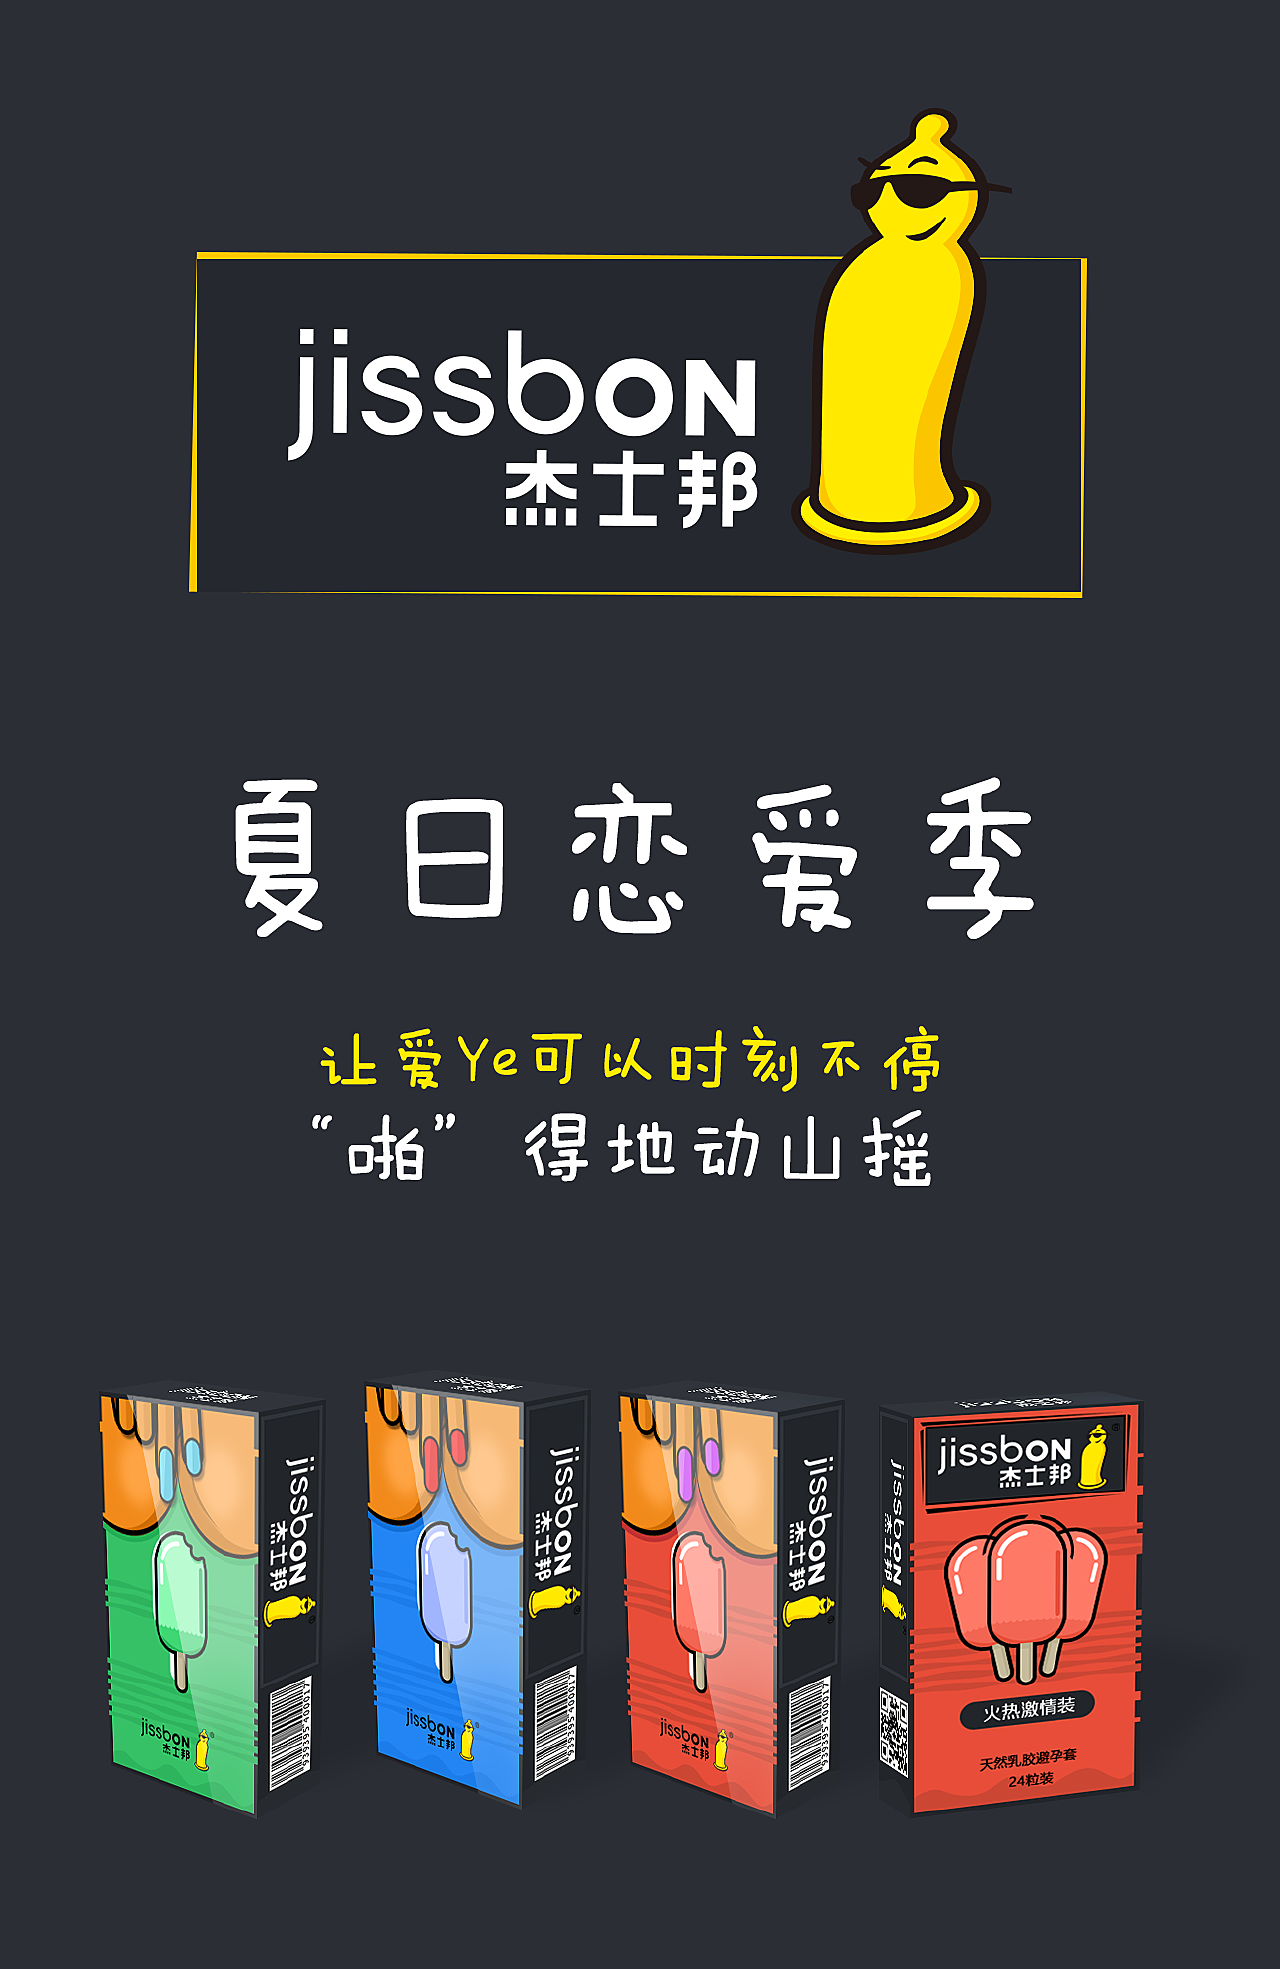 杰士邦/JISSBON 避孕套001超柔润聚氨酯安全套2只装价格多少钱，报价，品牌，图片-至名健康网上药店